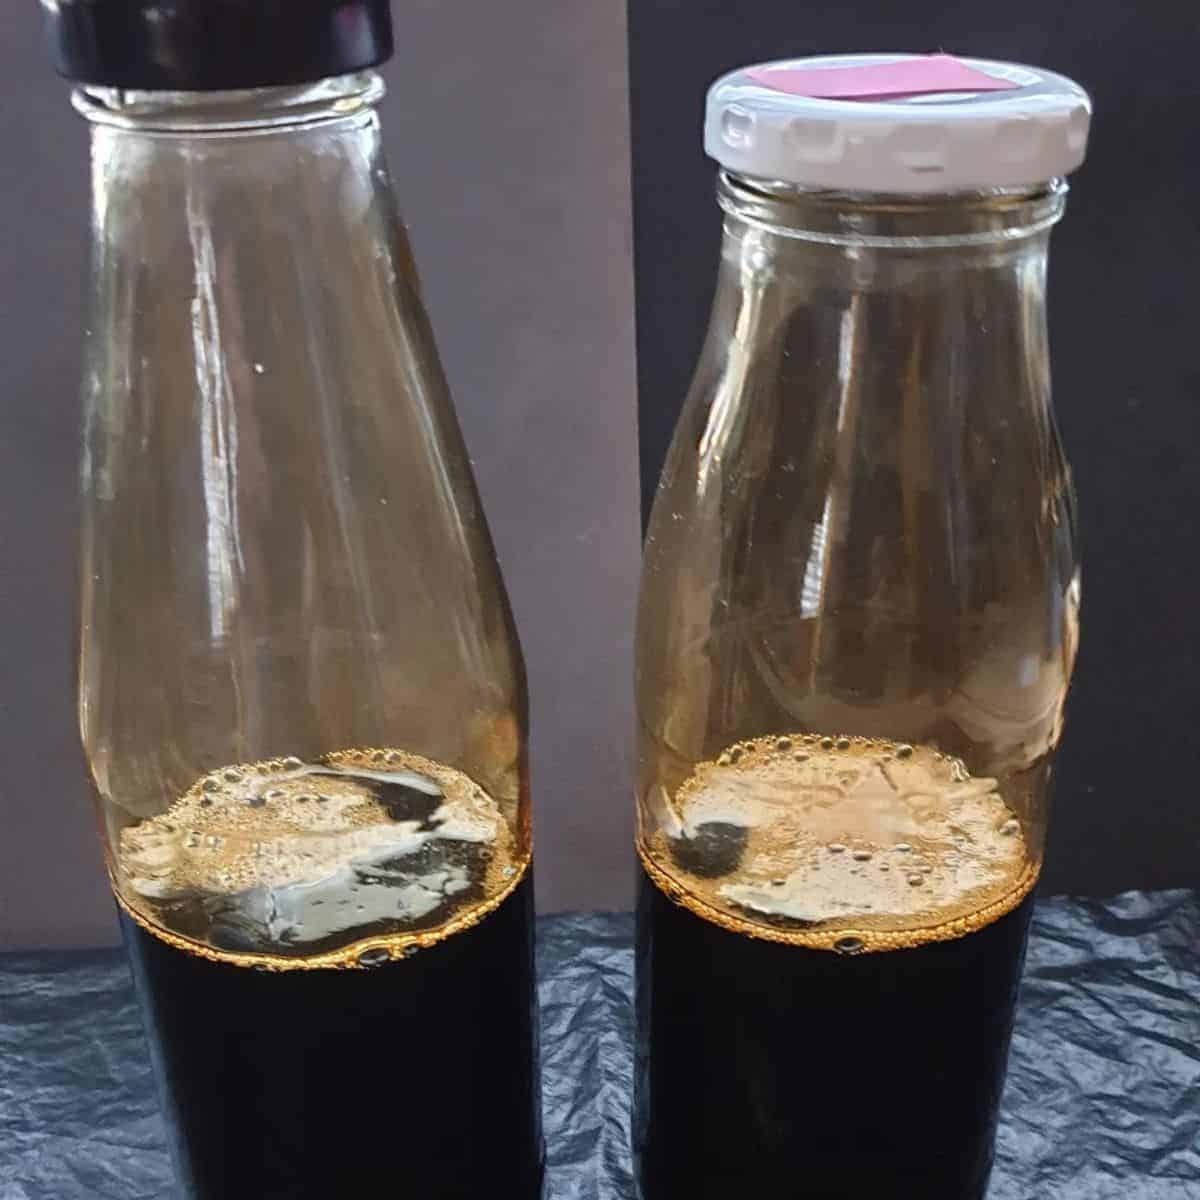 Dark brown liquid in two sealed bottles